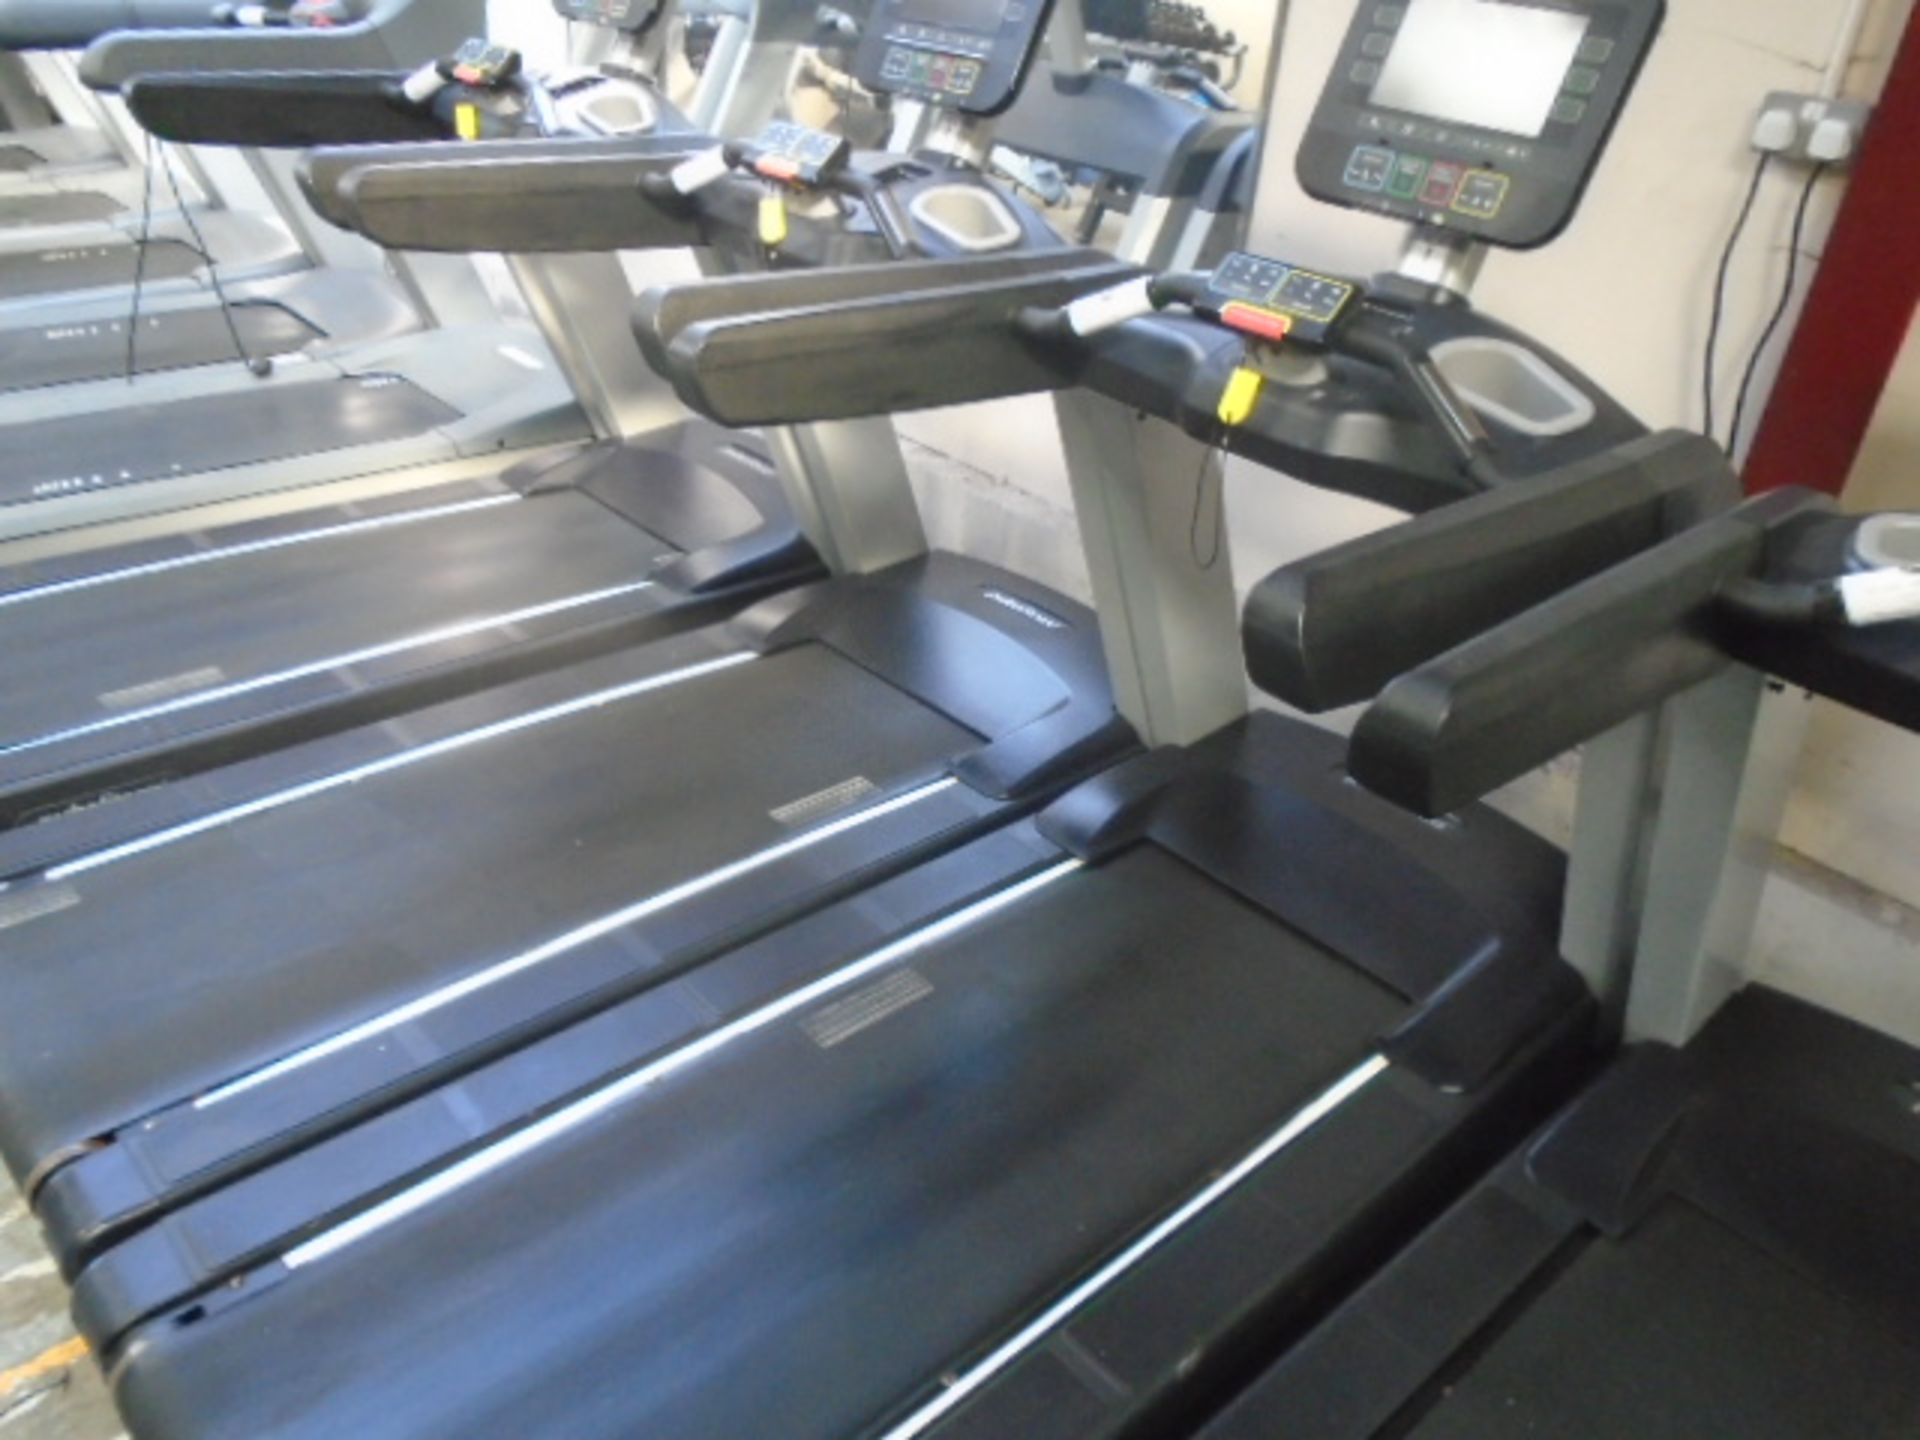 Pulse Fitness Treadmill